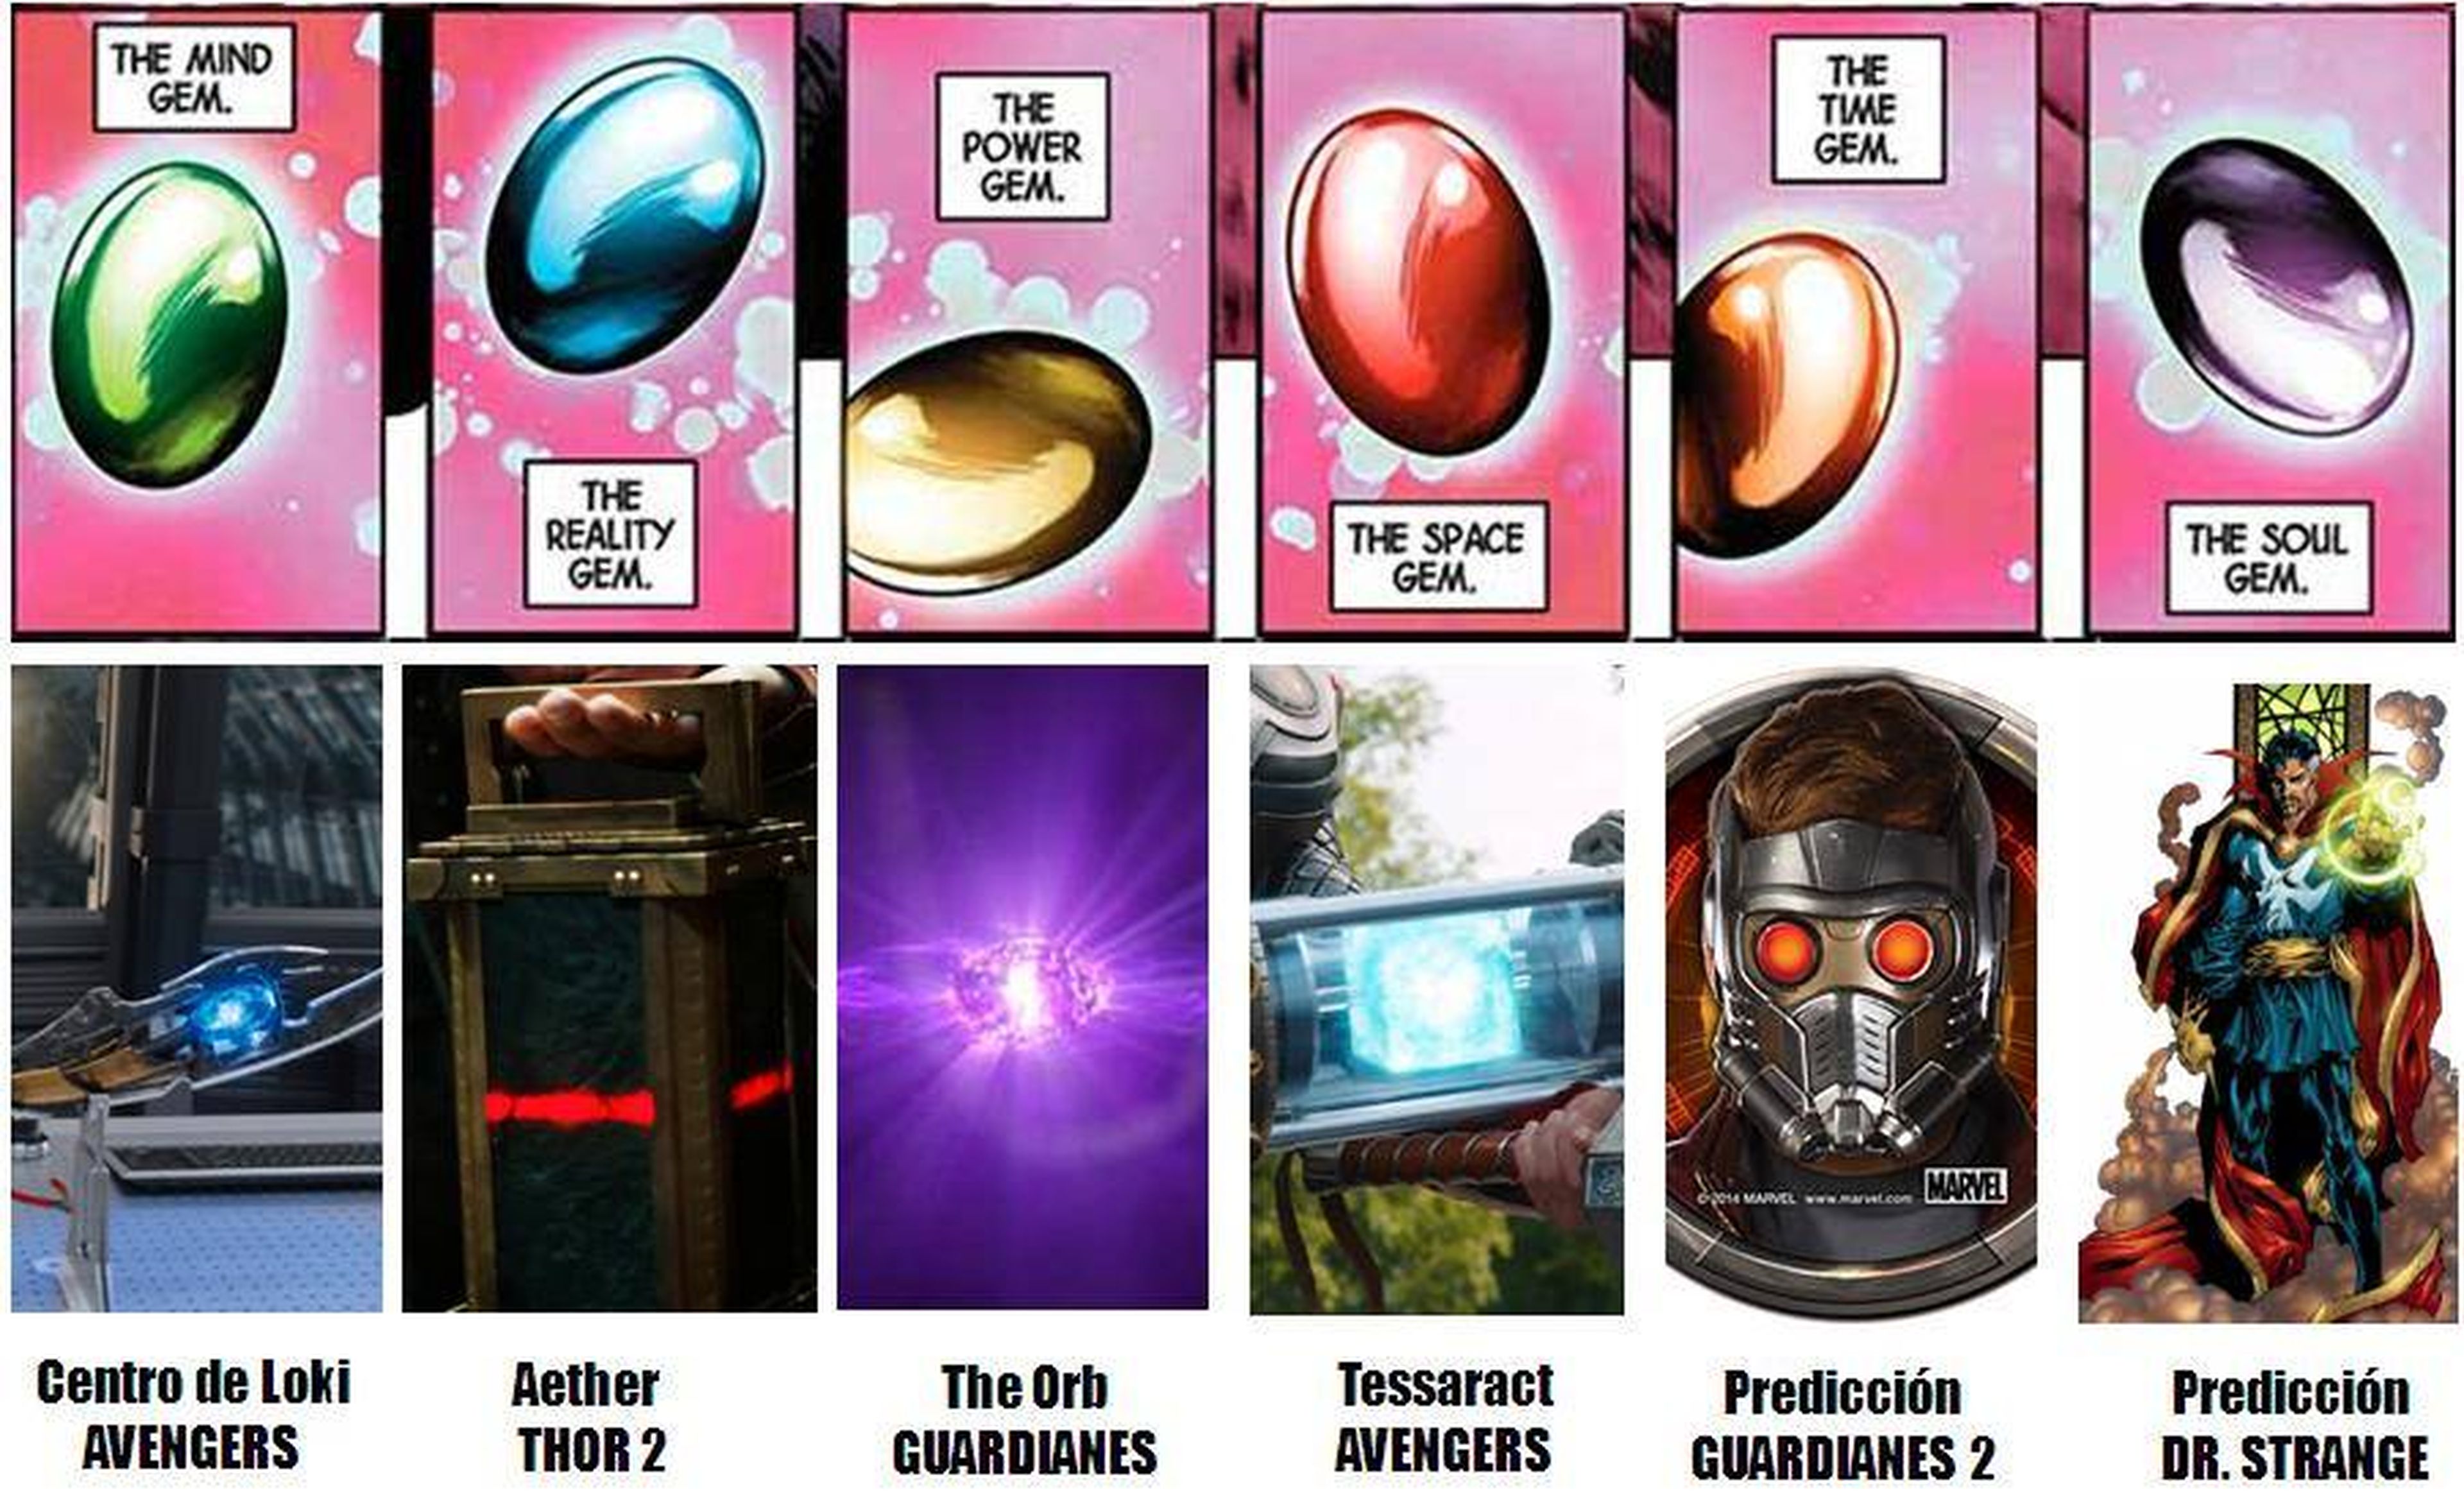 Vengadores: uno de los extras de la edición casera explica qué son las gemas del infinito